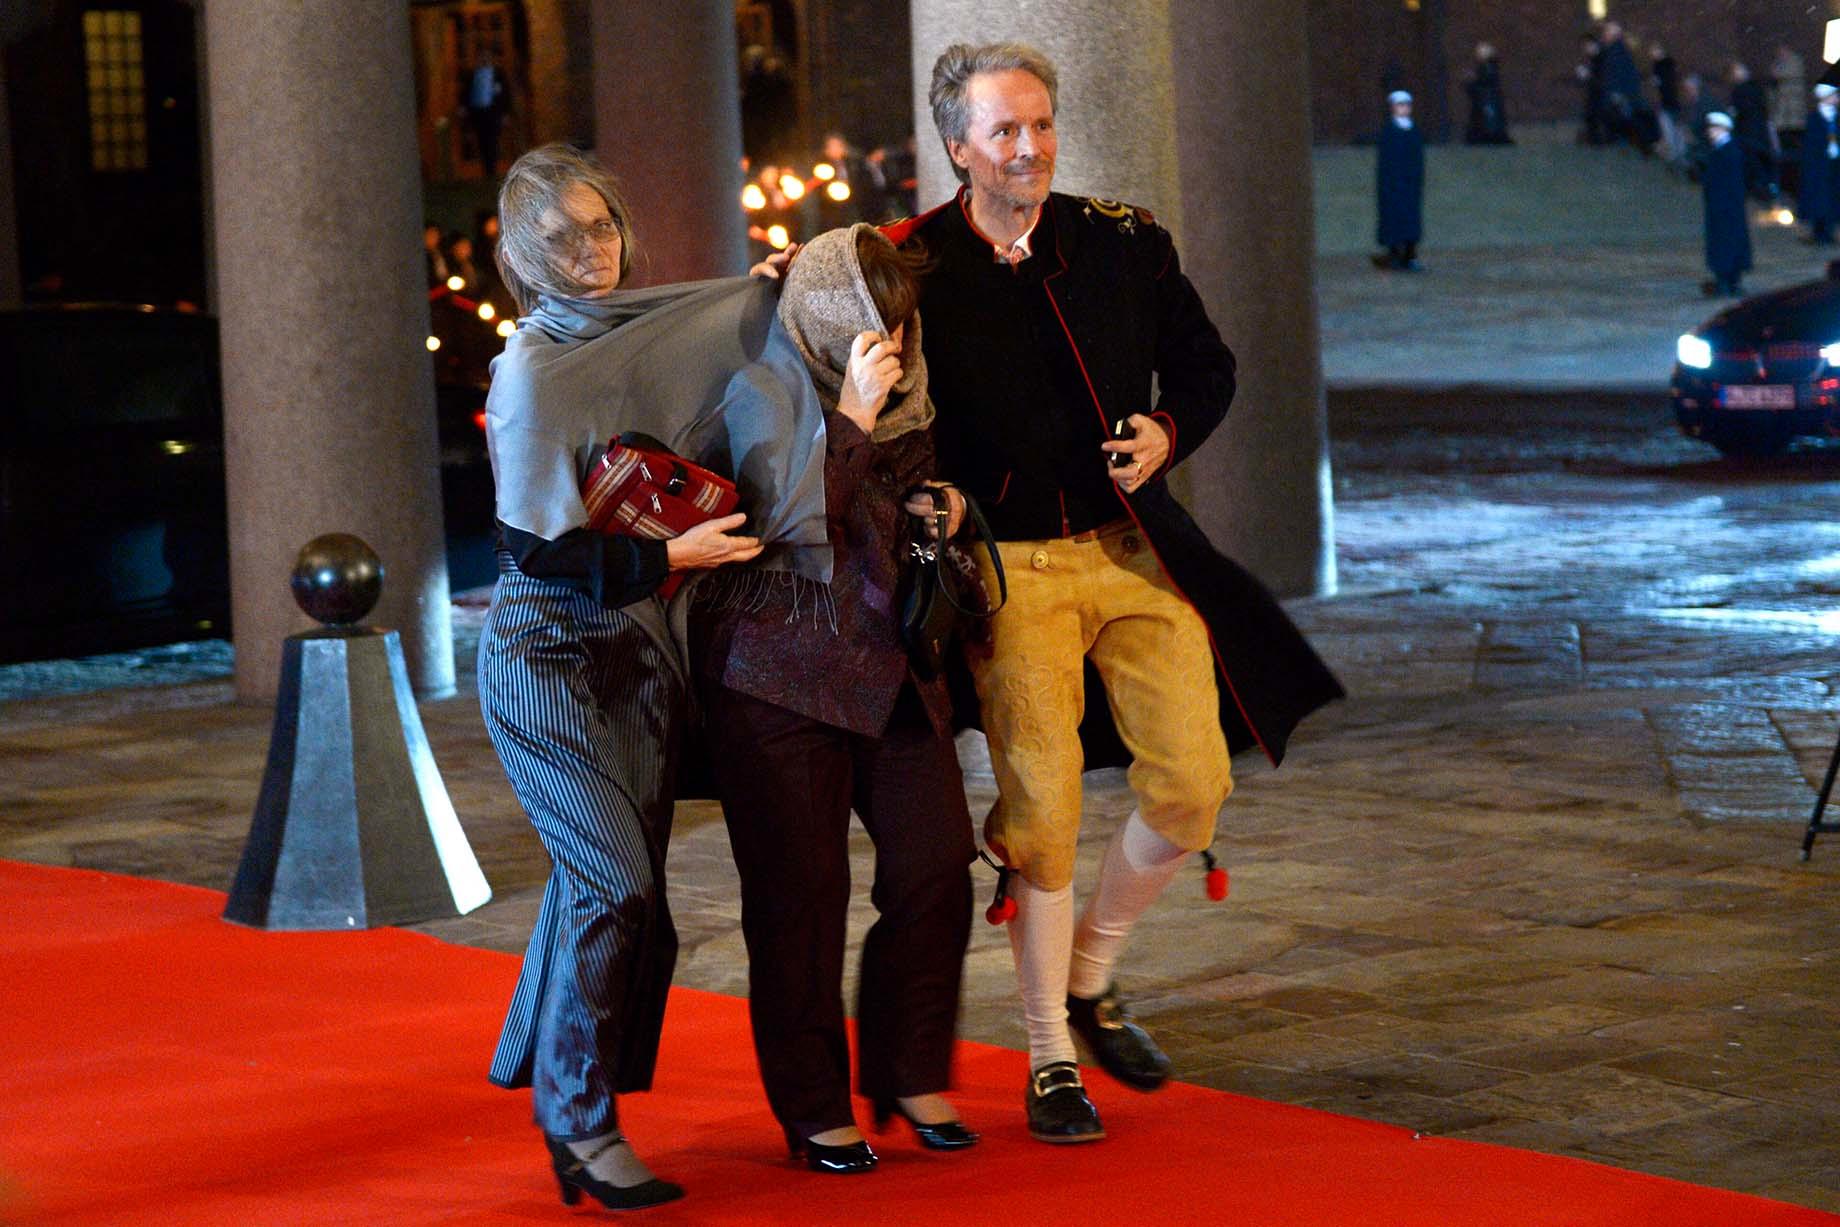 Nobelpristagare i blåsväder. Litteraturpristagaren Svetlana Aleksijevitj  anländer till Nobelbanketten i Stadshuset i Stockholm på torsdagen. Kajsa Öberg Lindsten (V) tolk och översättare av Svetlanas böcker.